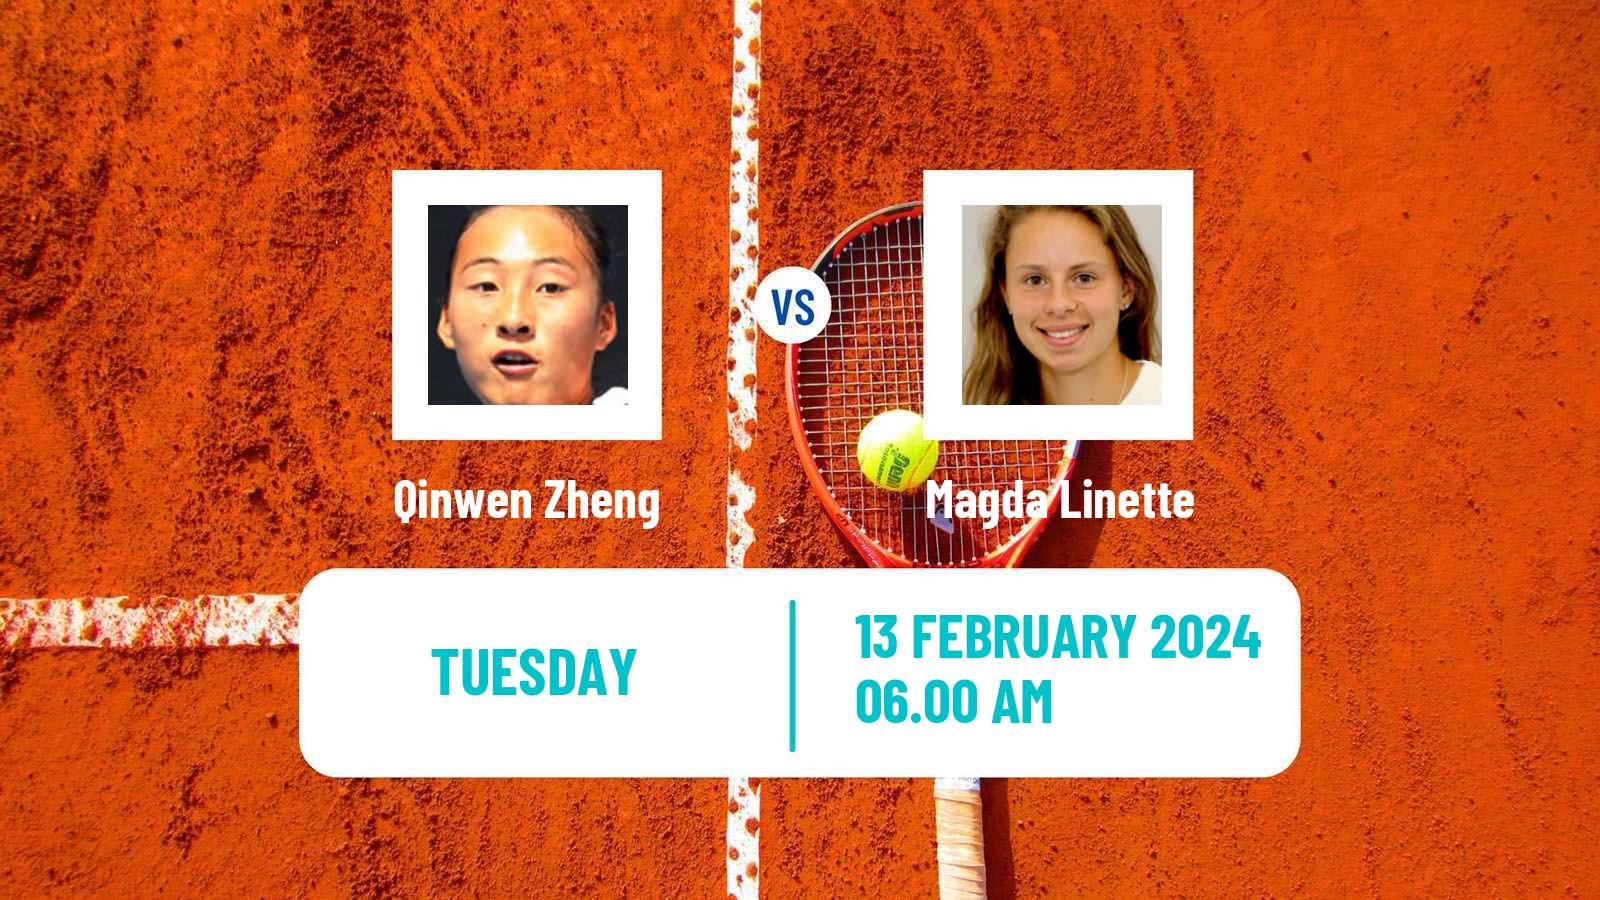 Tennis WTA Doha Qinwen Zheng - Magda Linette